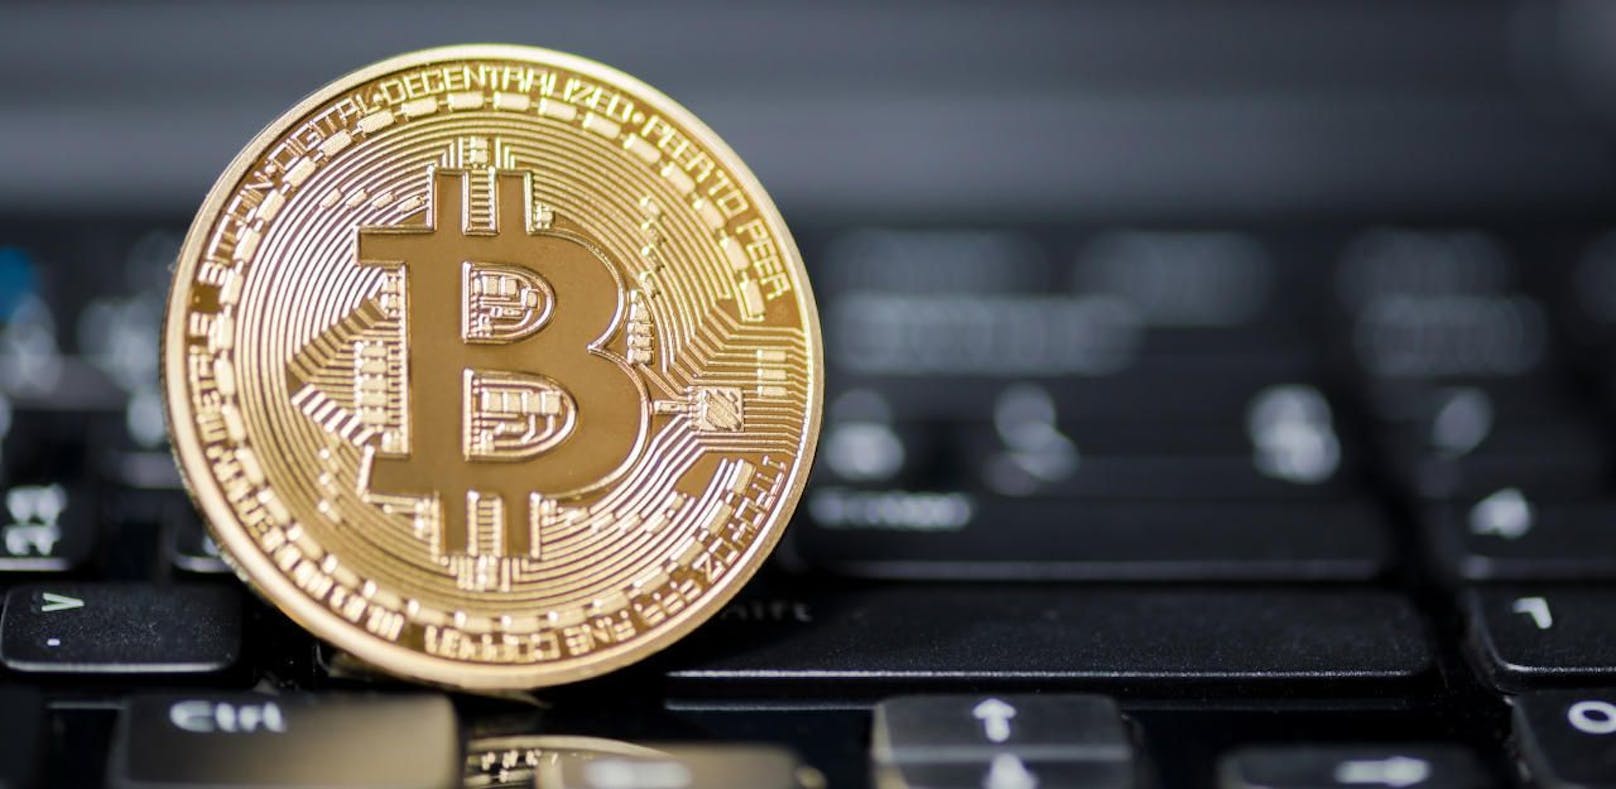 71-Jähriger wurde Opfer von Bitcoin-Betrügerin